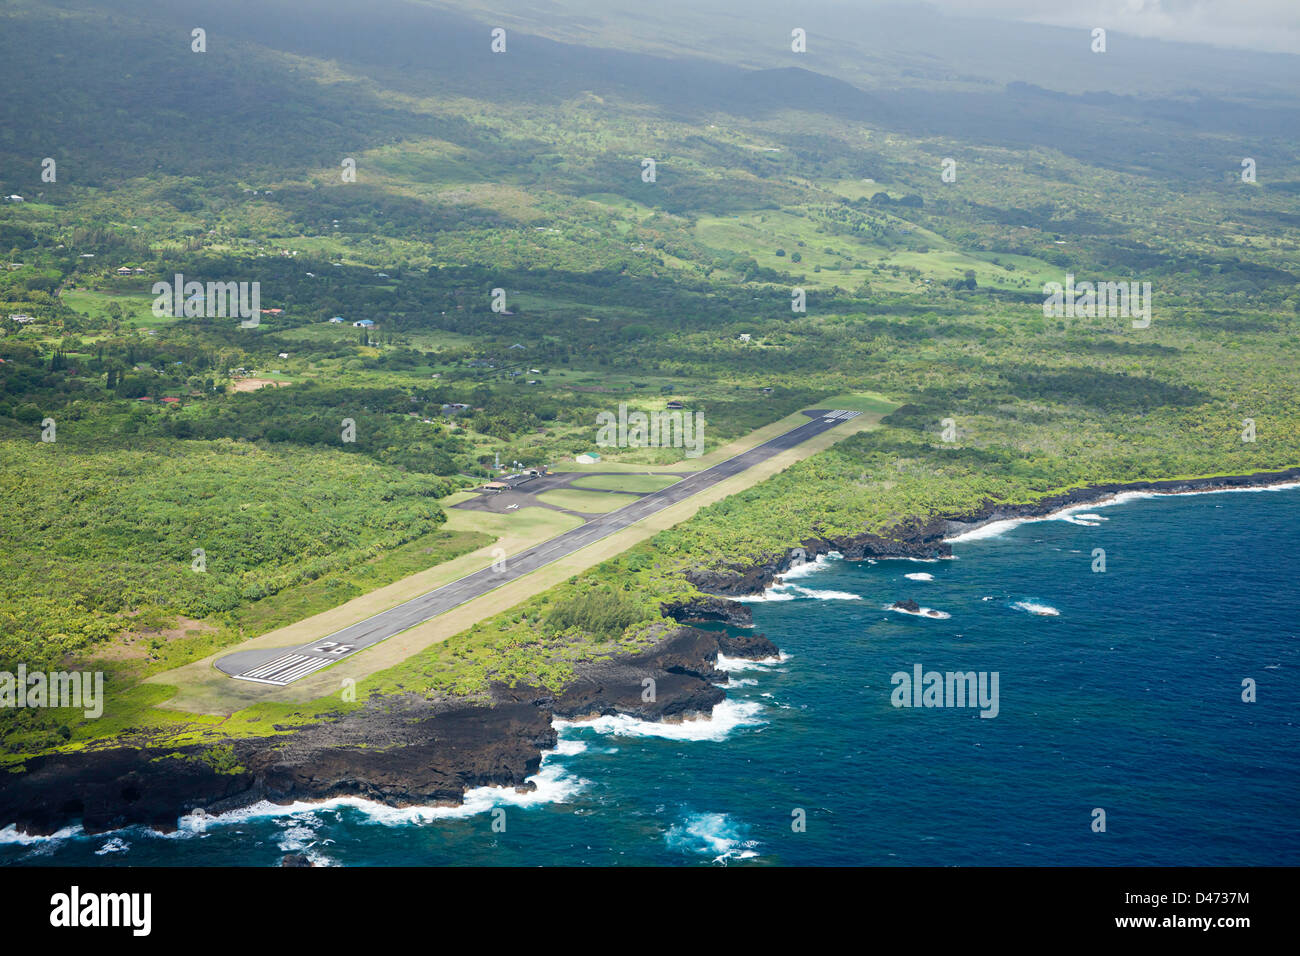 Eine Luftaufnahme von Hanas Flughafen neben den Pazifischen Ozean an der Ostküste der Insel Maui, Hawaii. Stockfoto